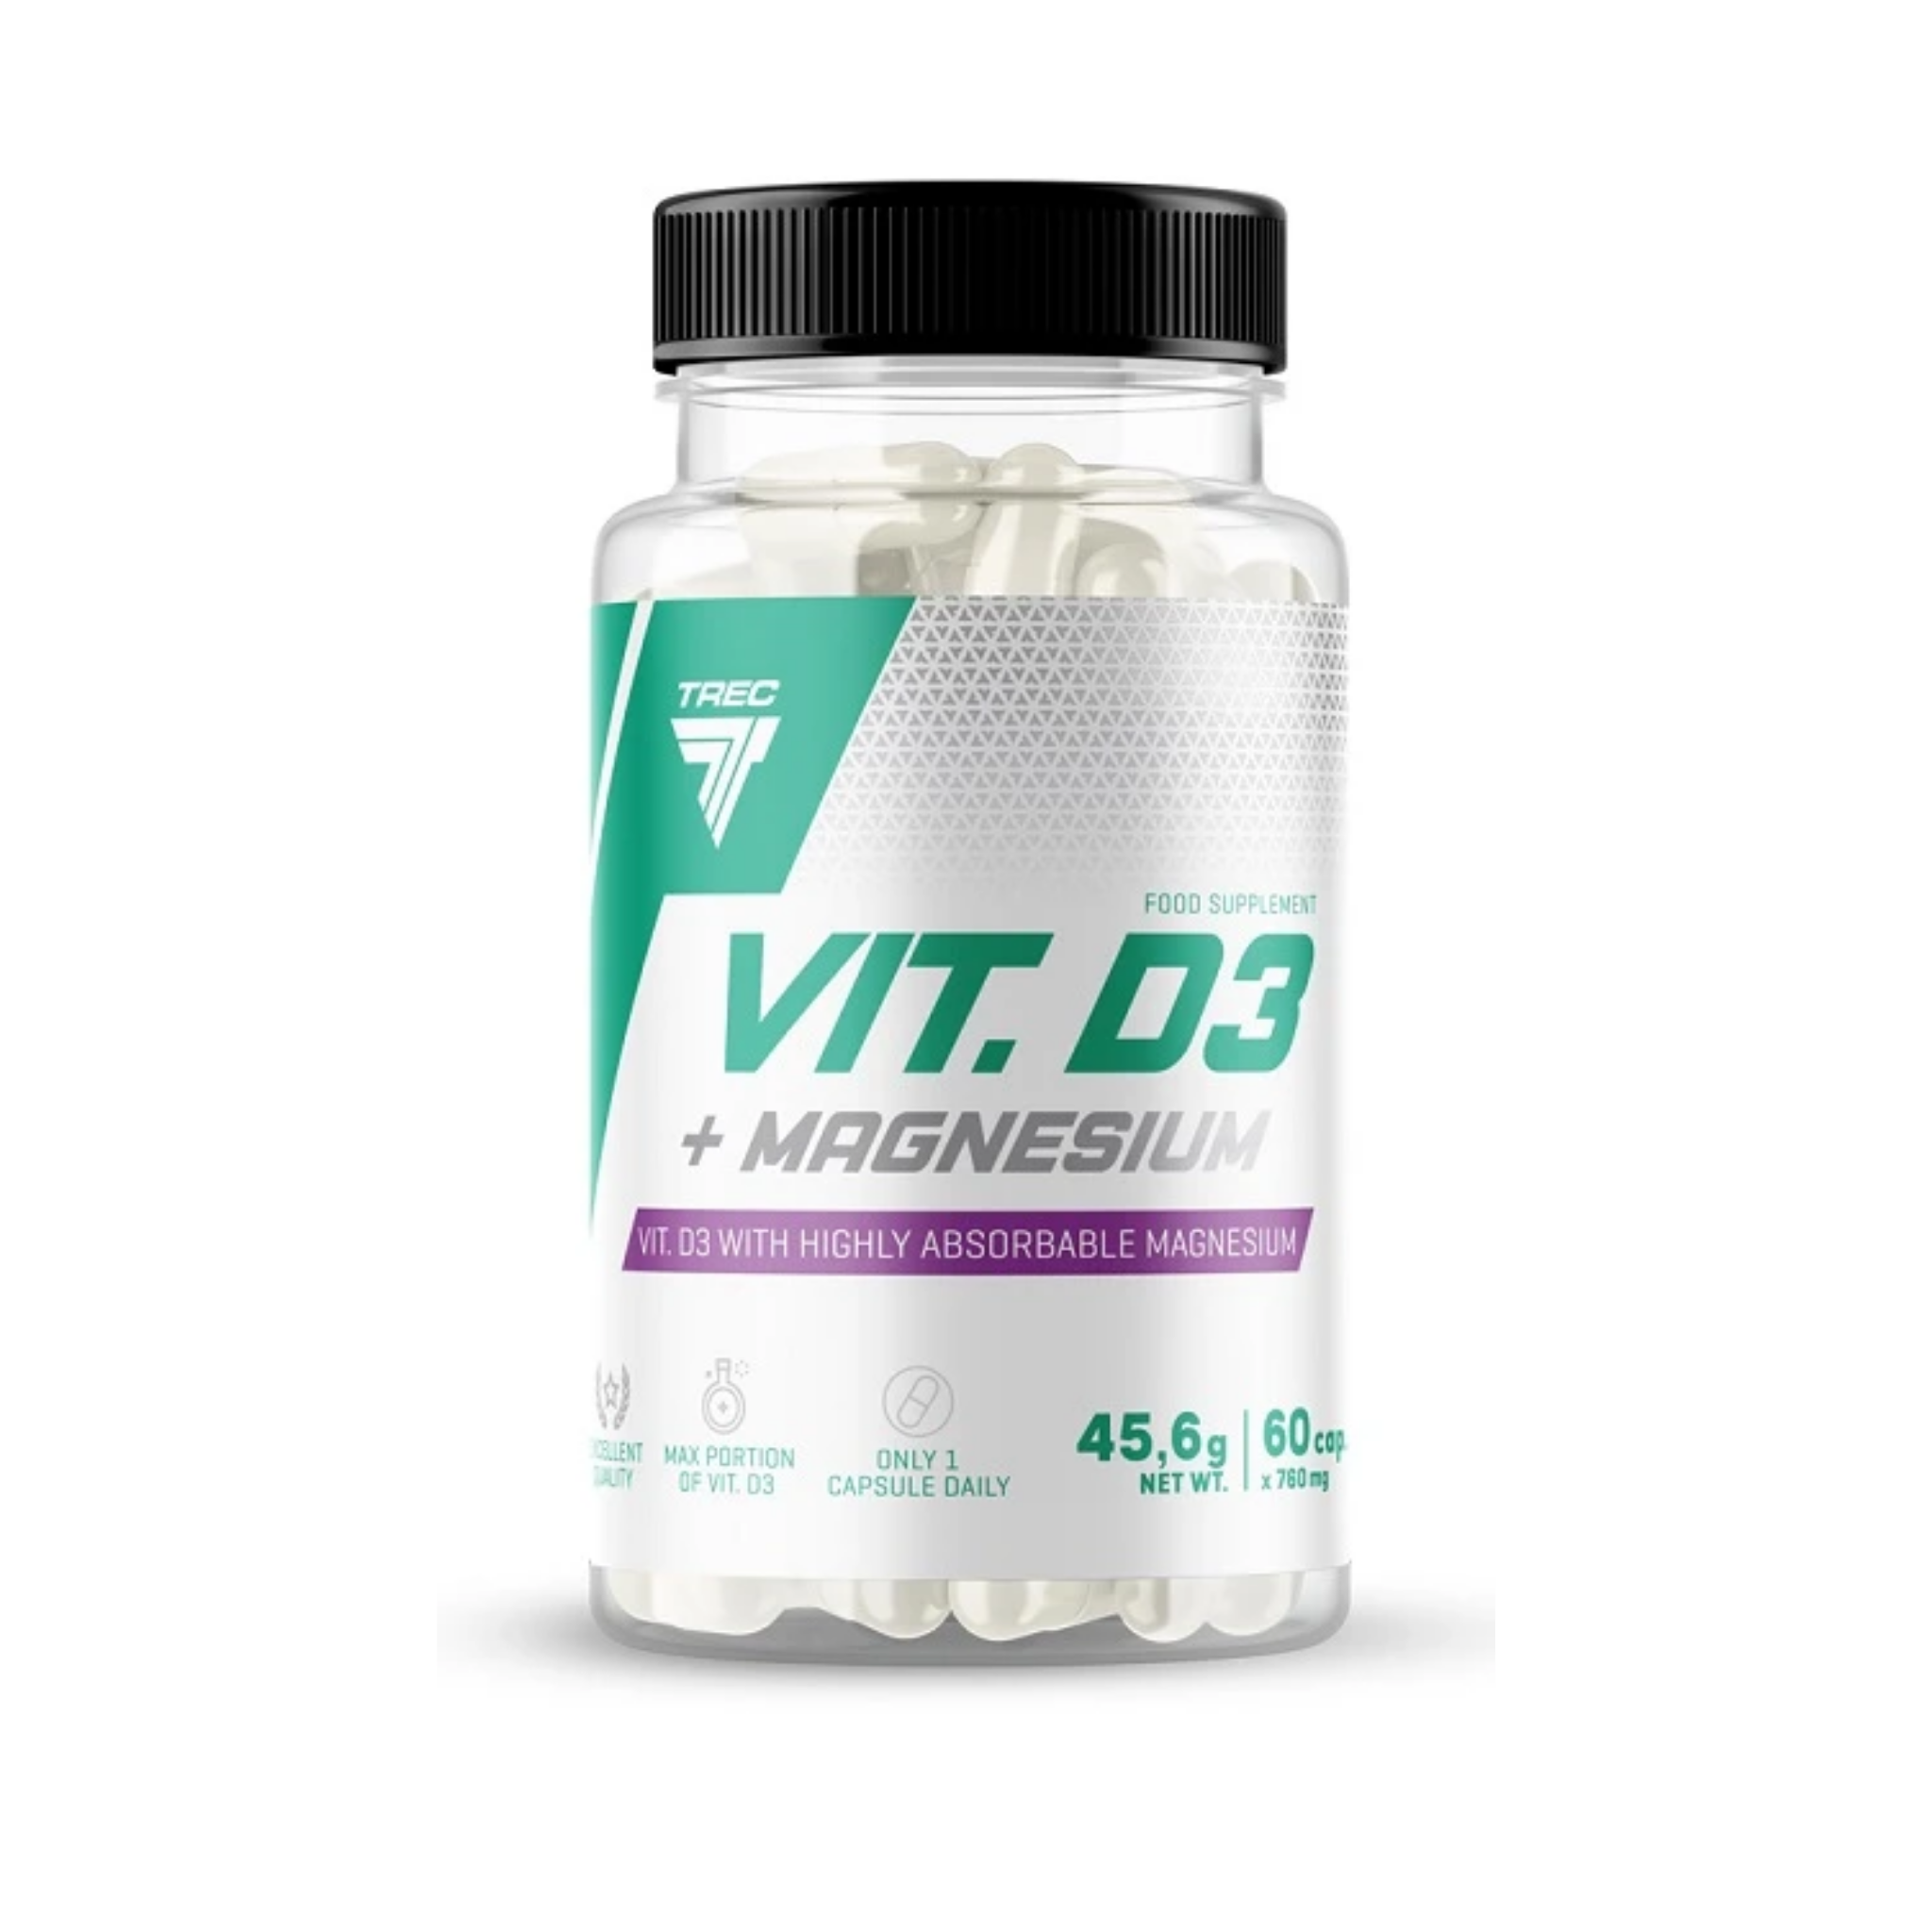 Vitamin D3 + Magnesium